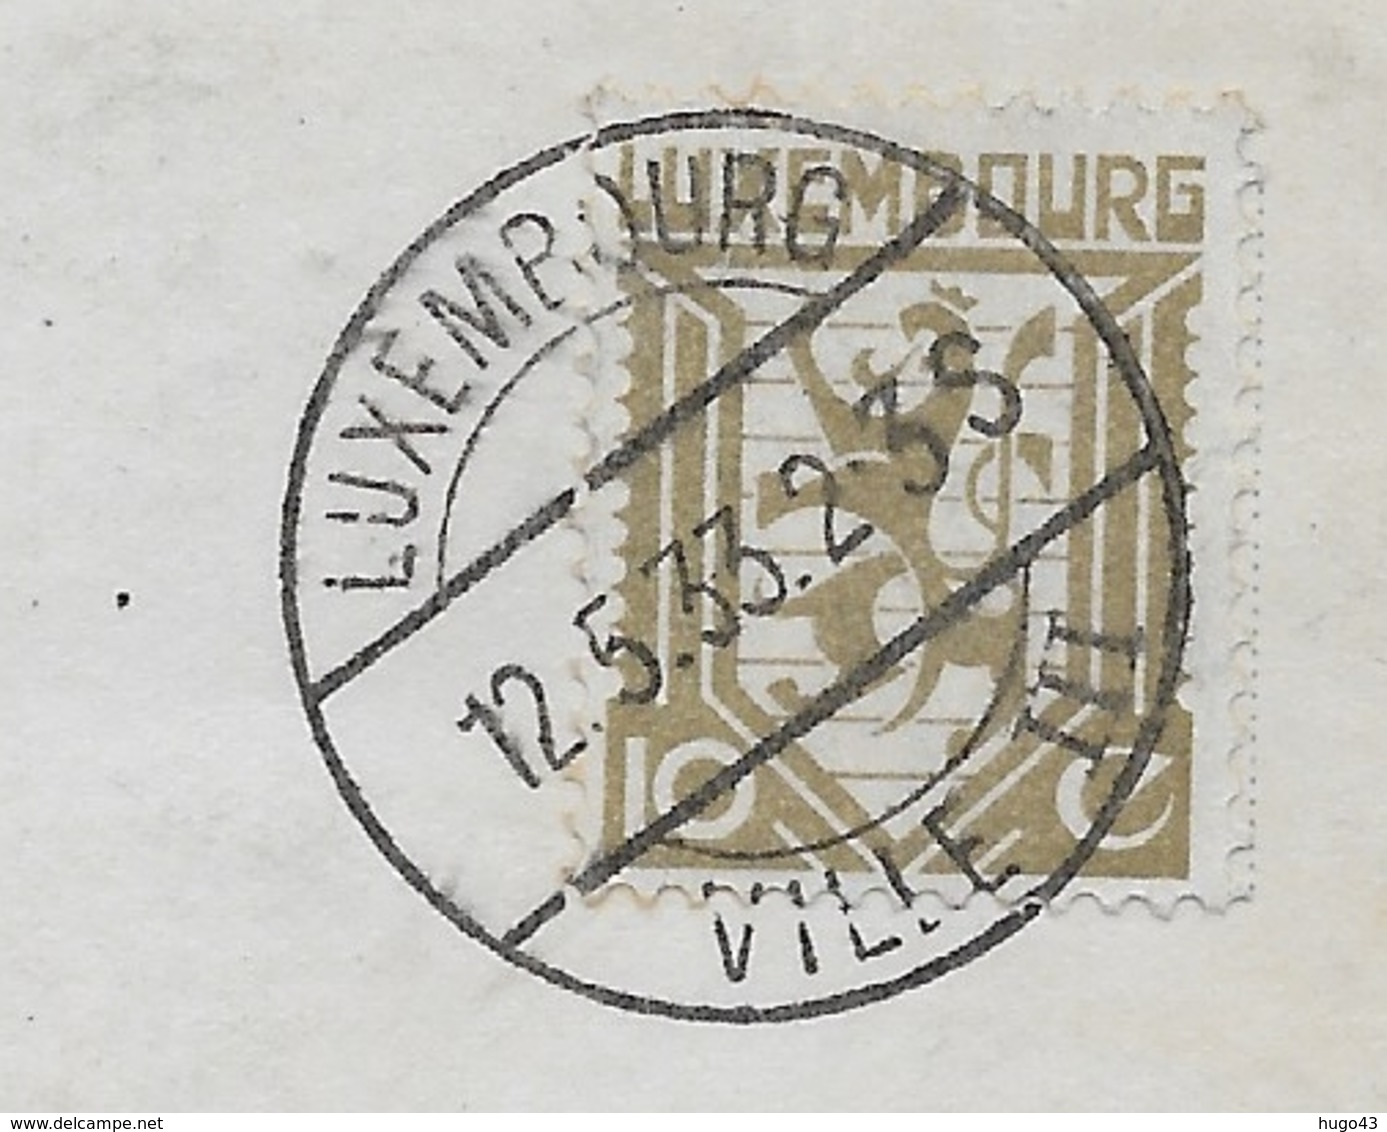 (RECTO / VERSO) LUXEMBOURG EN 1933 - LE PALAIS GRAND DUCAL - BEAU CACHET ET BEAU TIMBRE - CPA VOYAGEE - Luxembourg - Ville